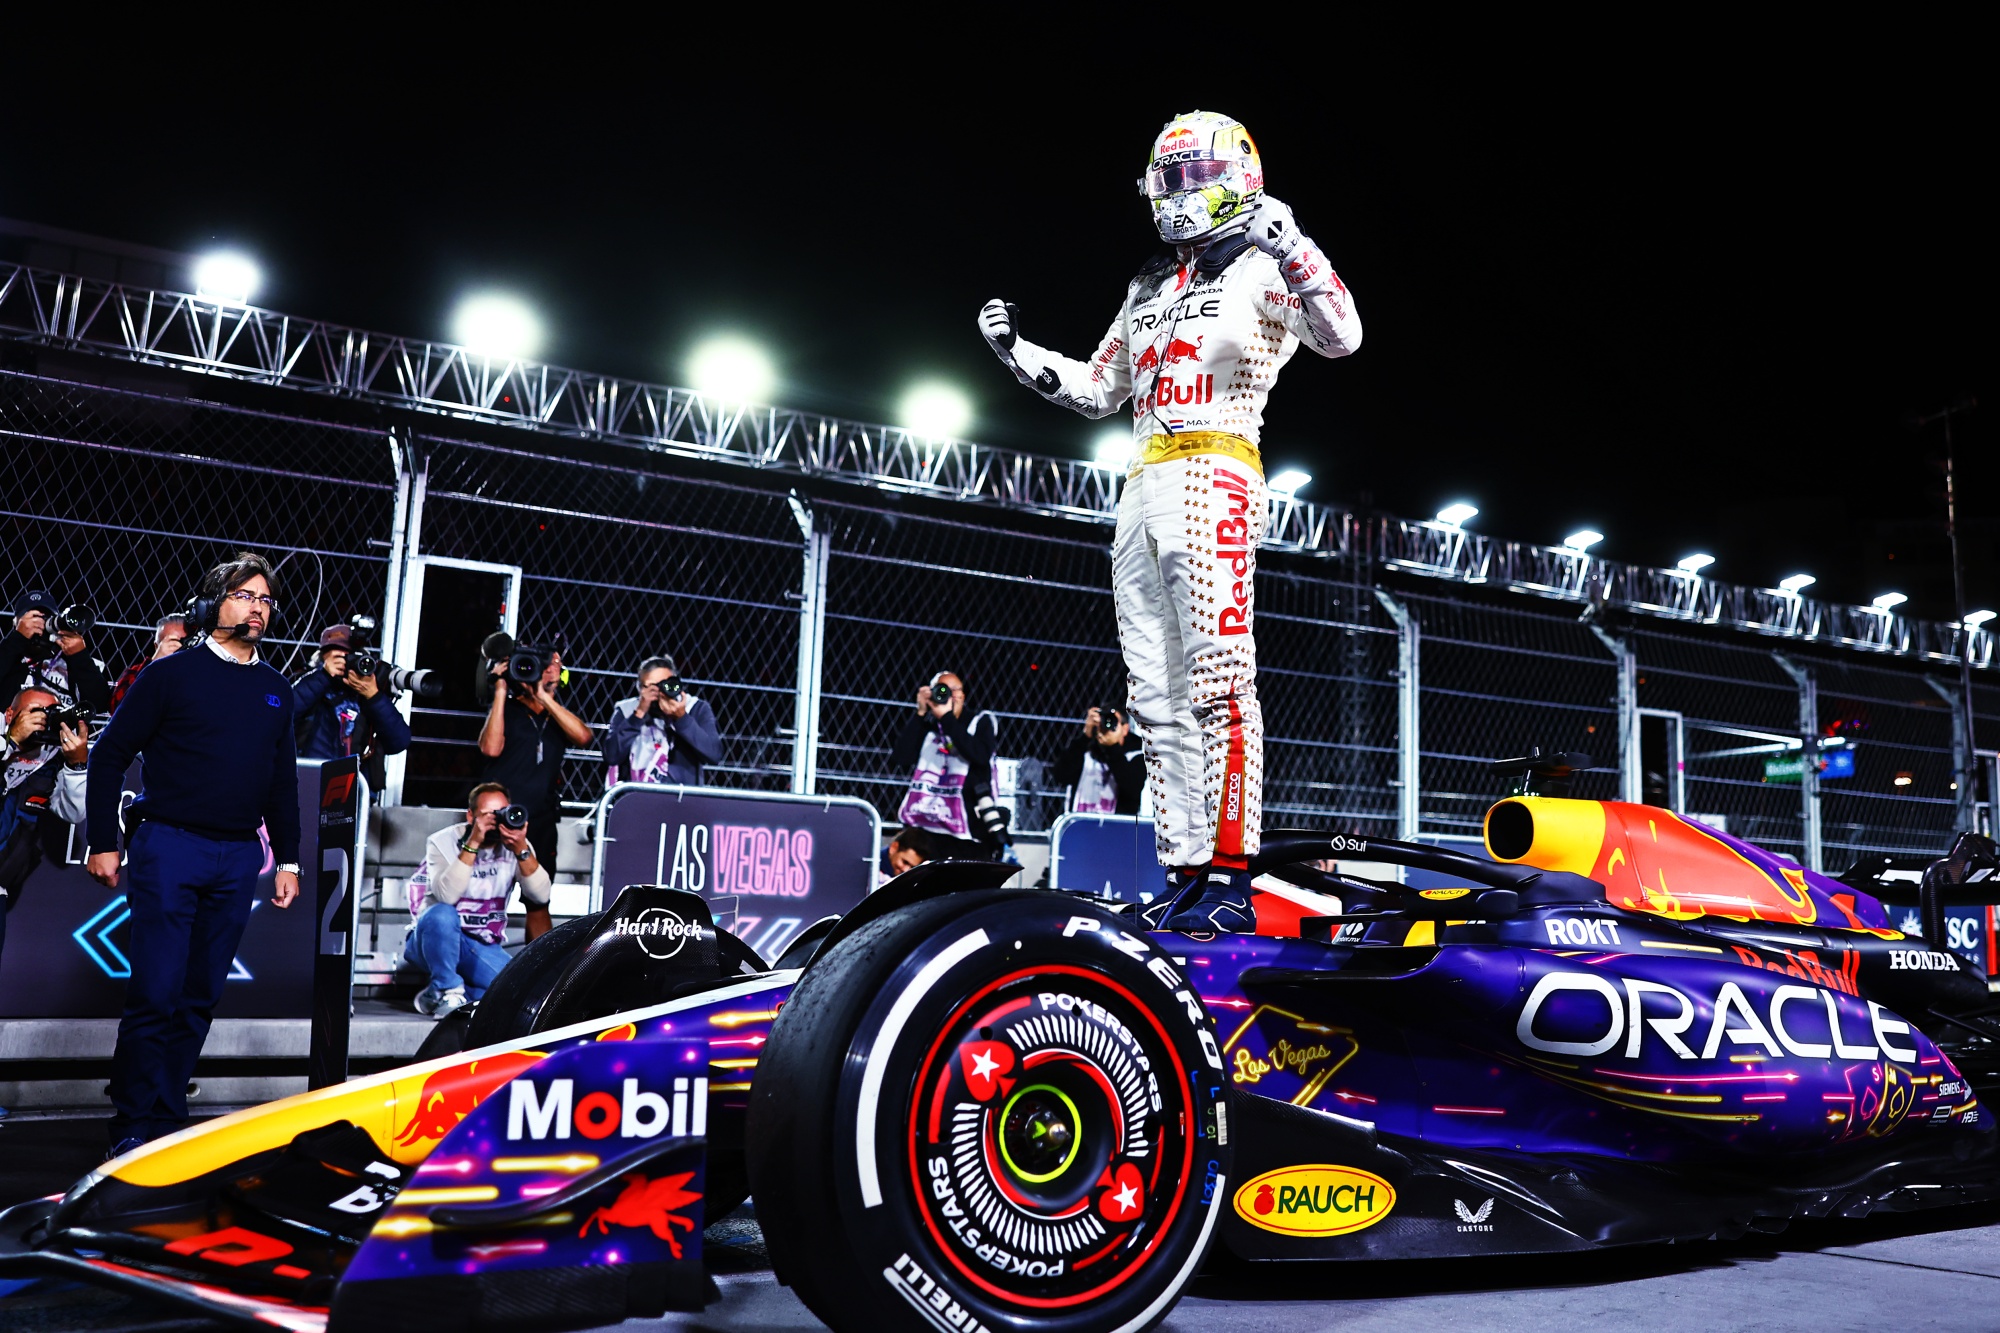 Formula 1 champ Max Verstappen on Red Bull's winning streak: 'We fought for  this' - ABC News